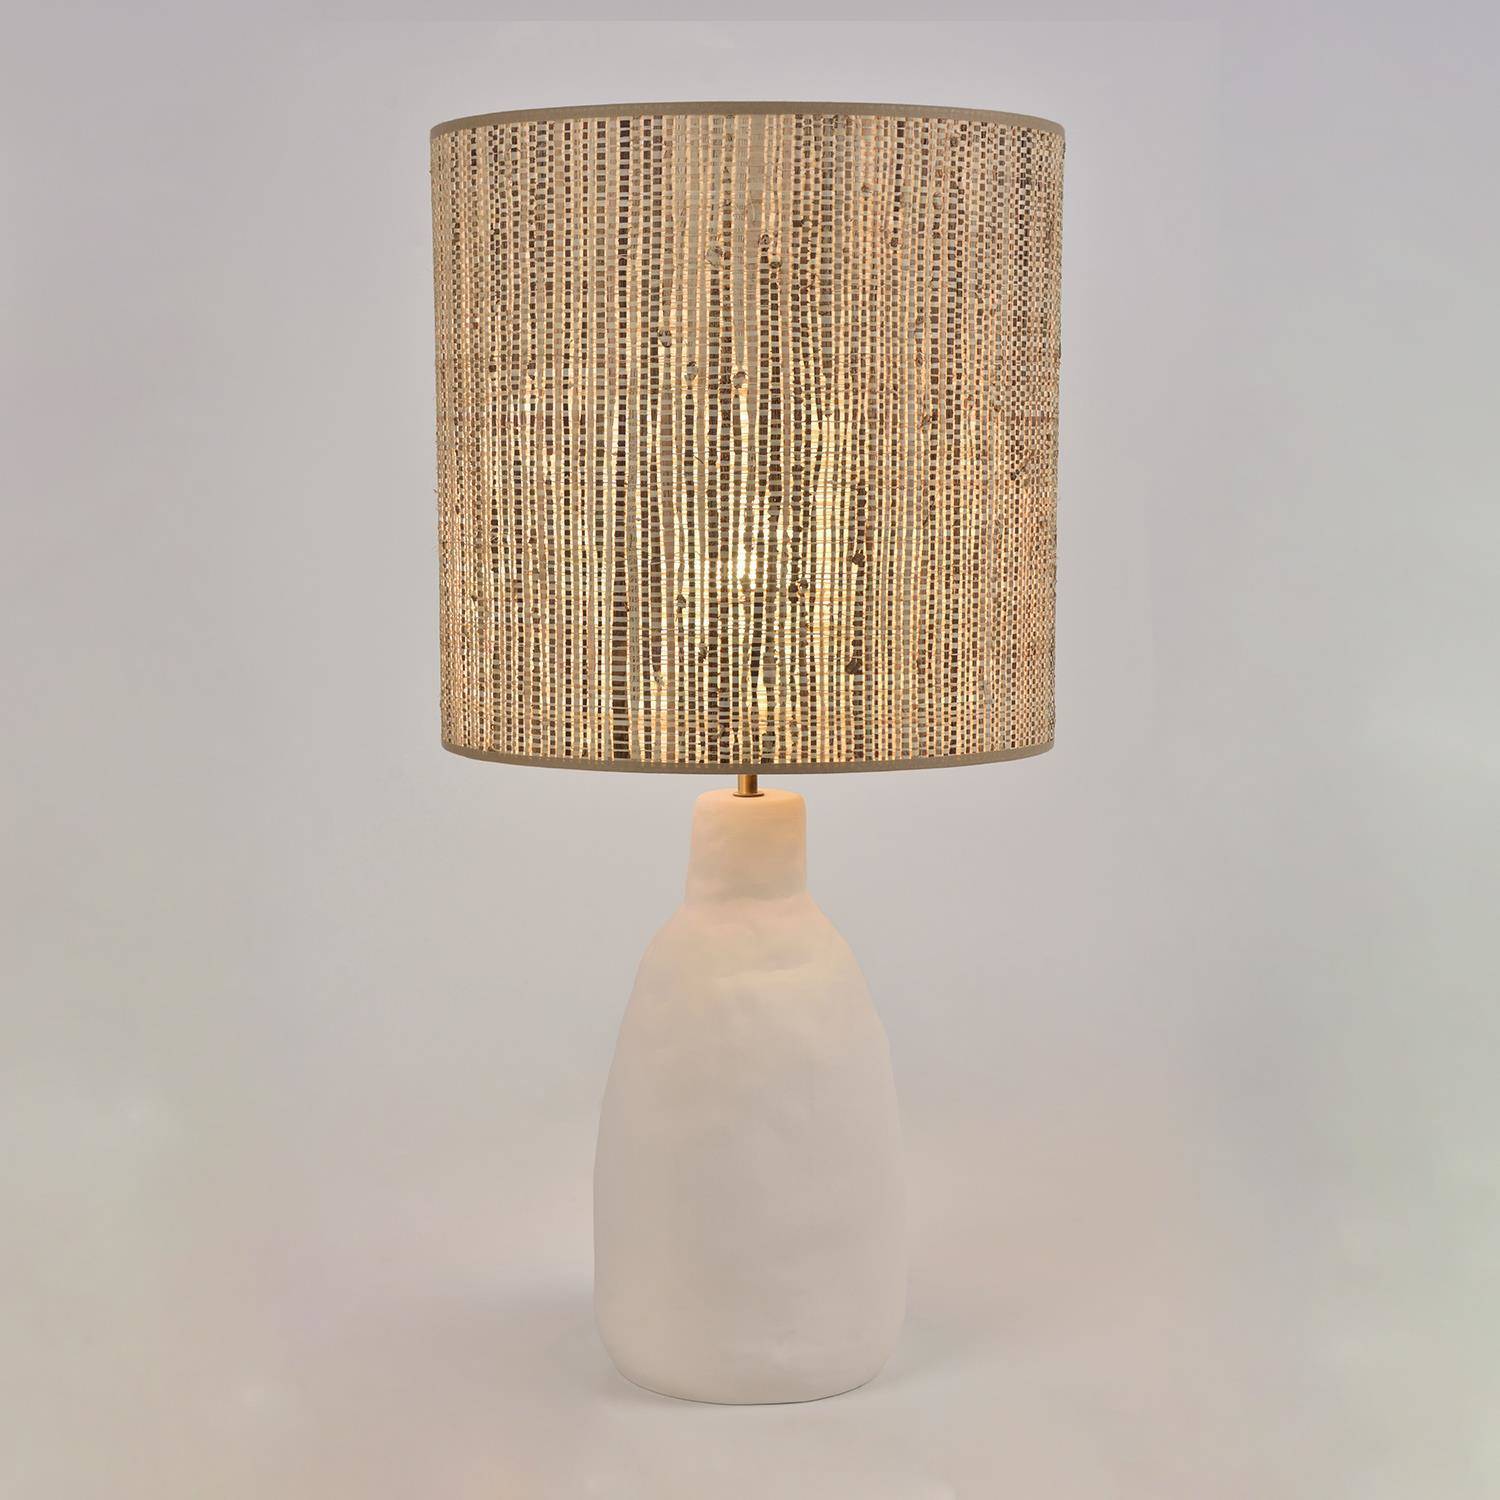 Market Set :: Lampa stołowa Portinatx biało-brązowa wys. 77 cm